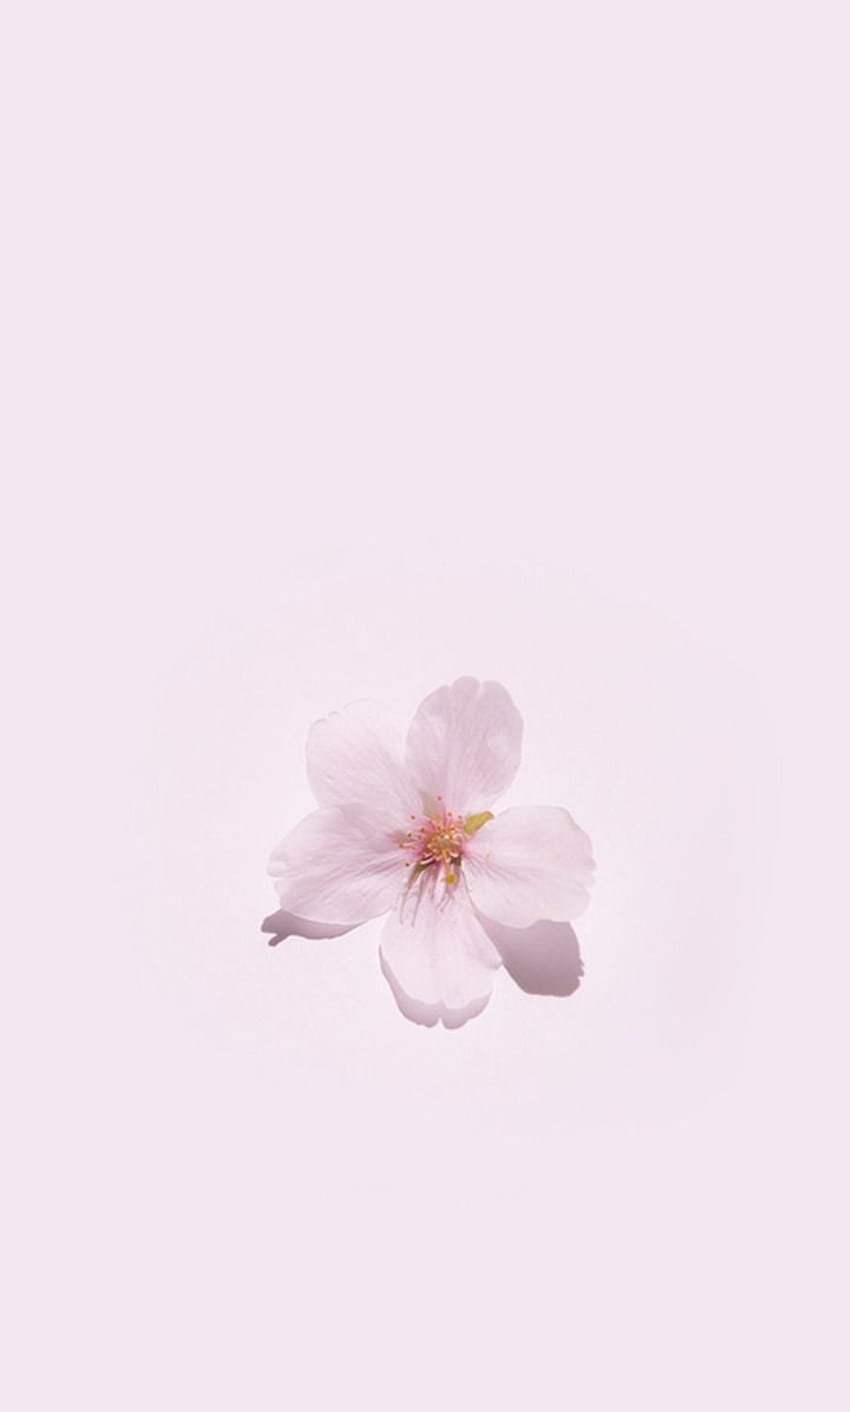 нoυѕe oғ jaѕмιn, pastel aesthetic flower HD phone wallpaper